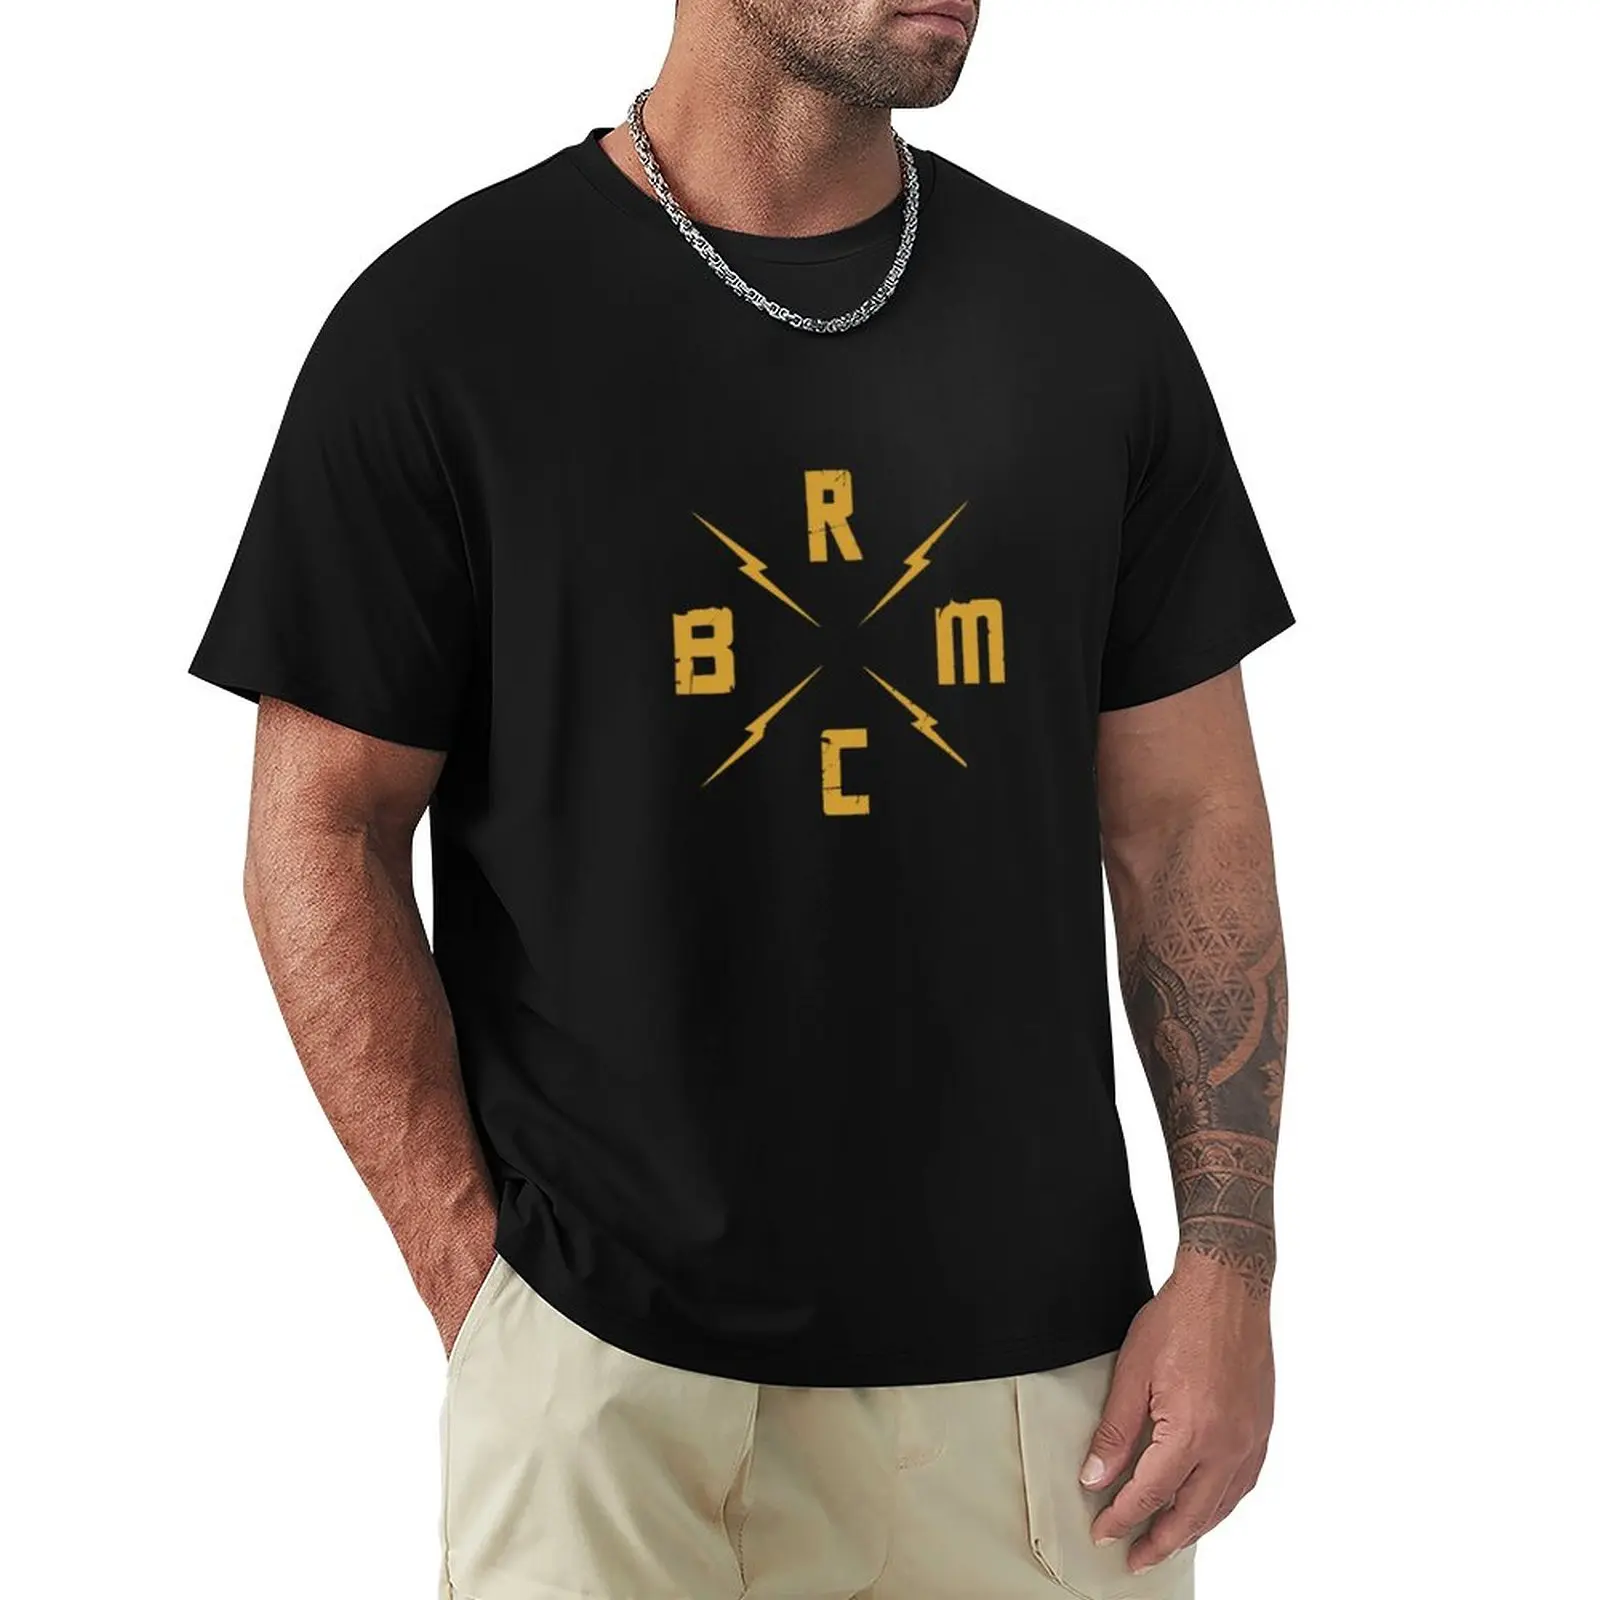 Популярная футболка с логотипом BRMC, футболка с животным принтом, футболки для мальчиков, однотонная футболка, забавная футболка, мужская футболка Изображение 0